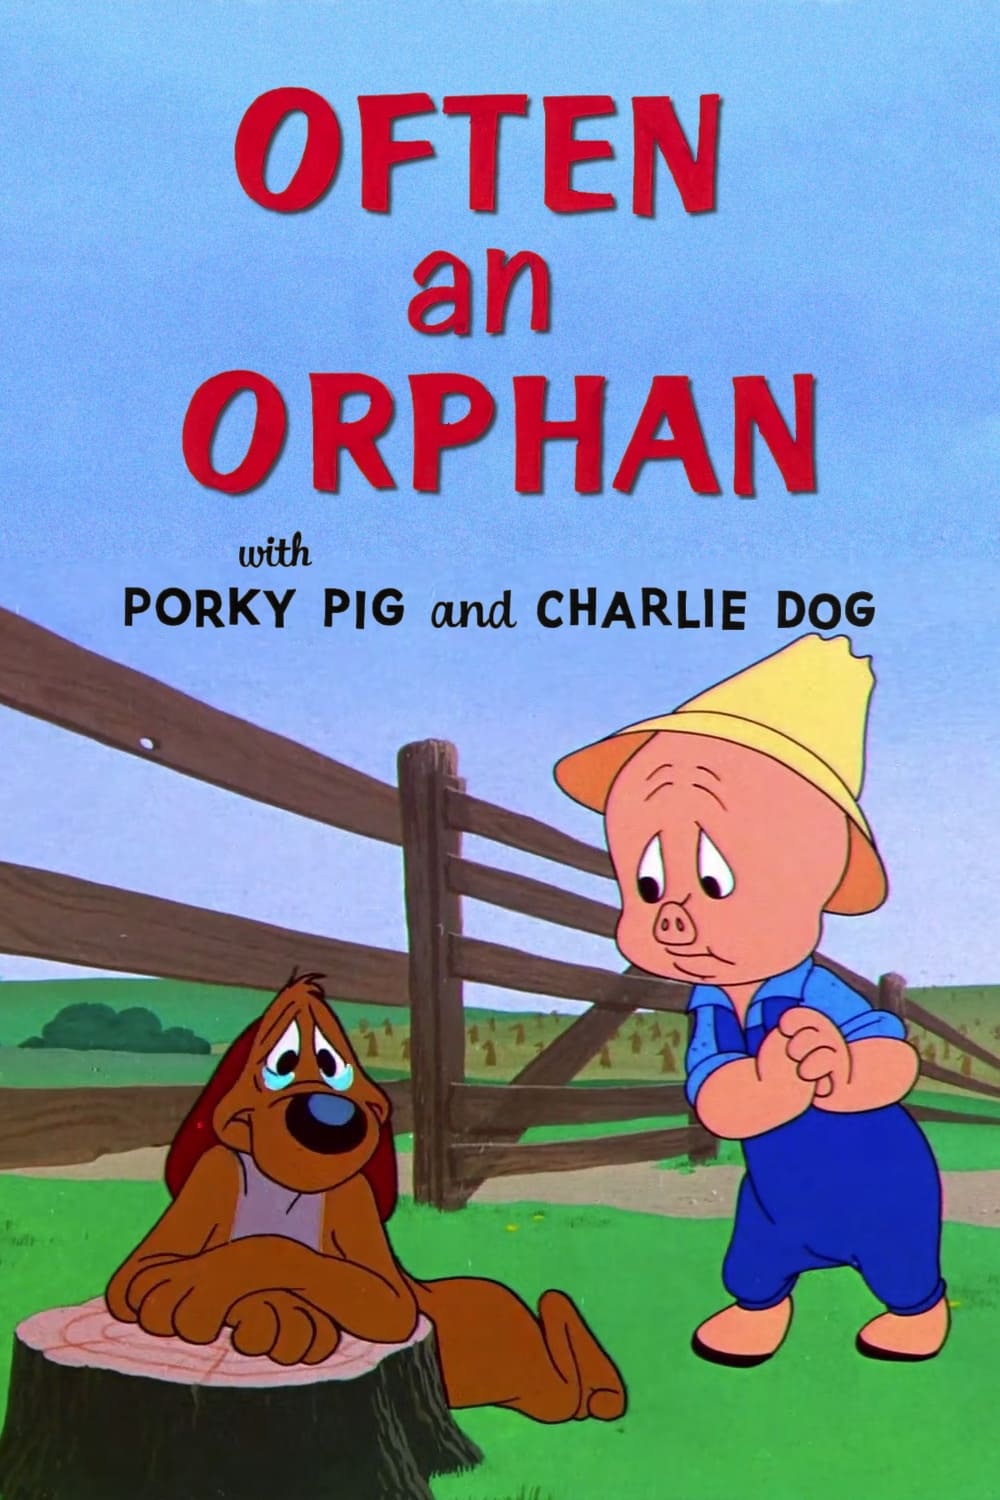 Often an Orphan (1949)